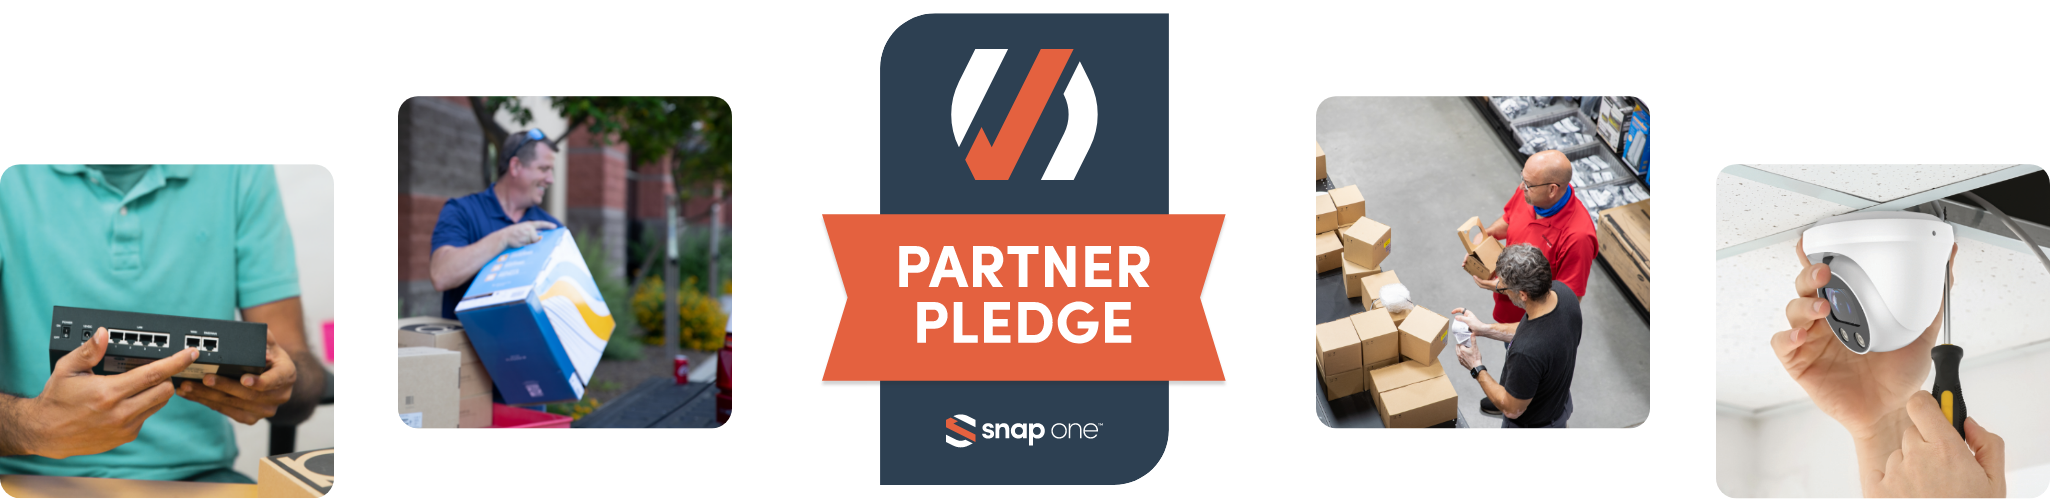 Partner Pledge banner